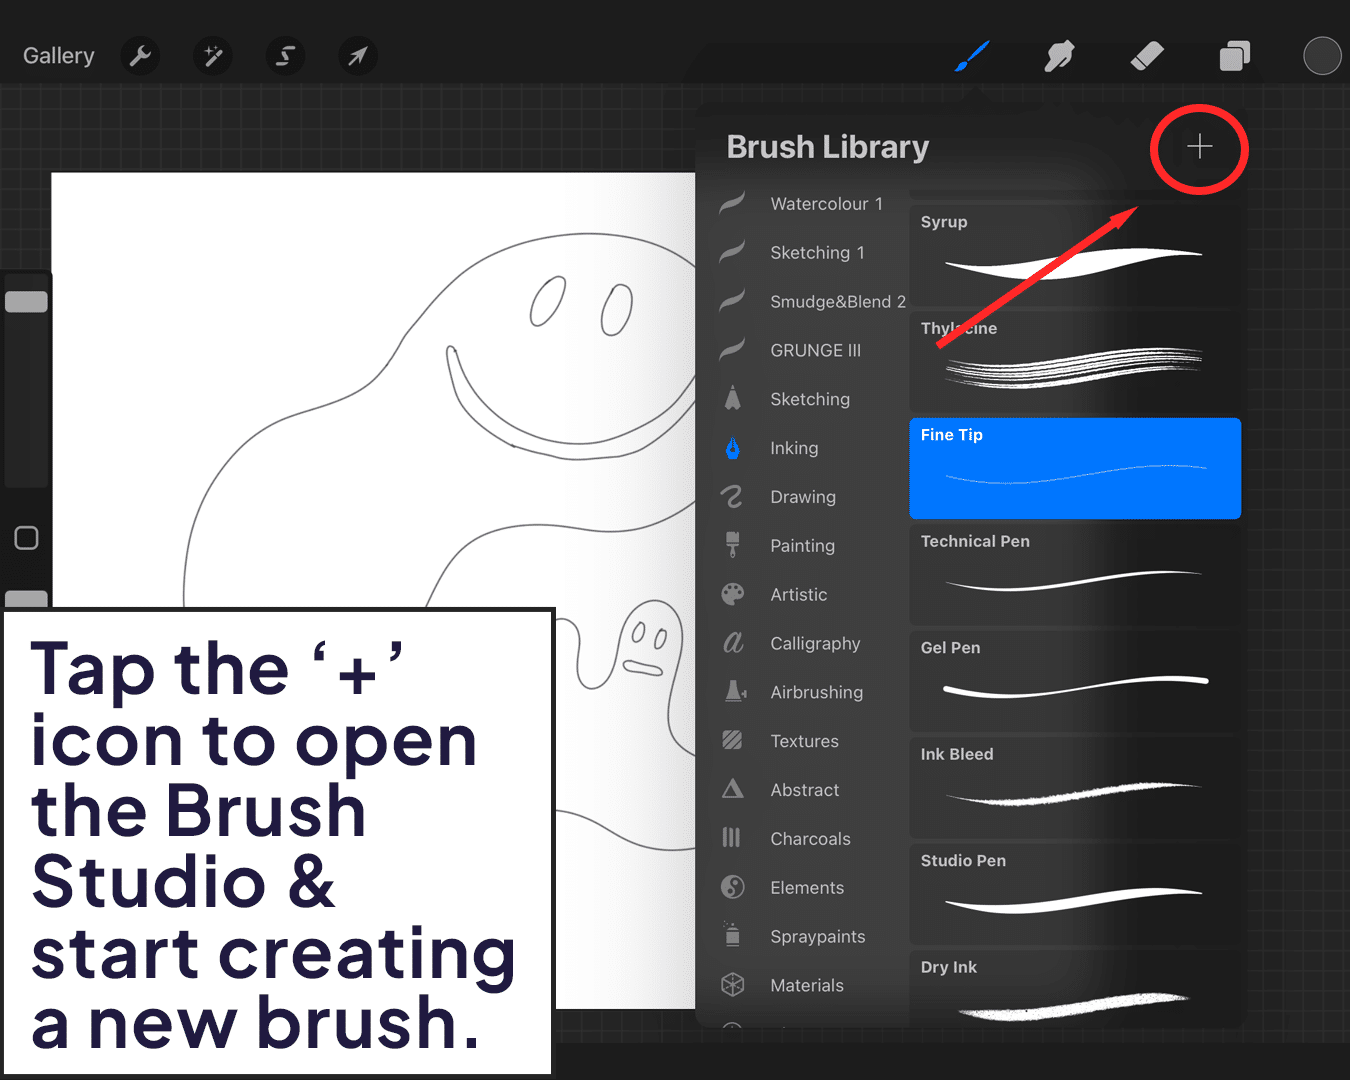 Creating a new brush in the Brush Studio